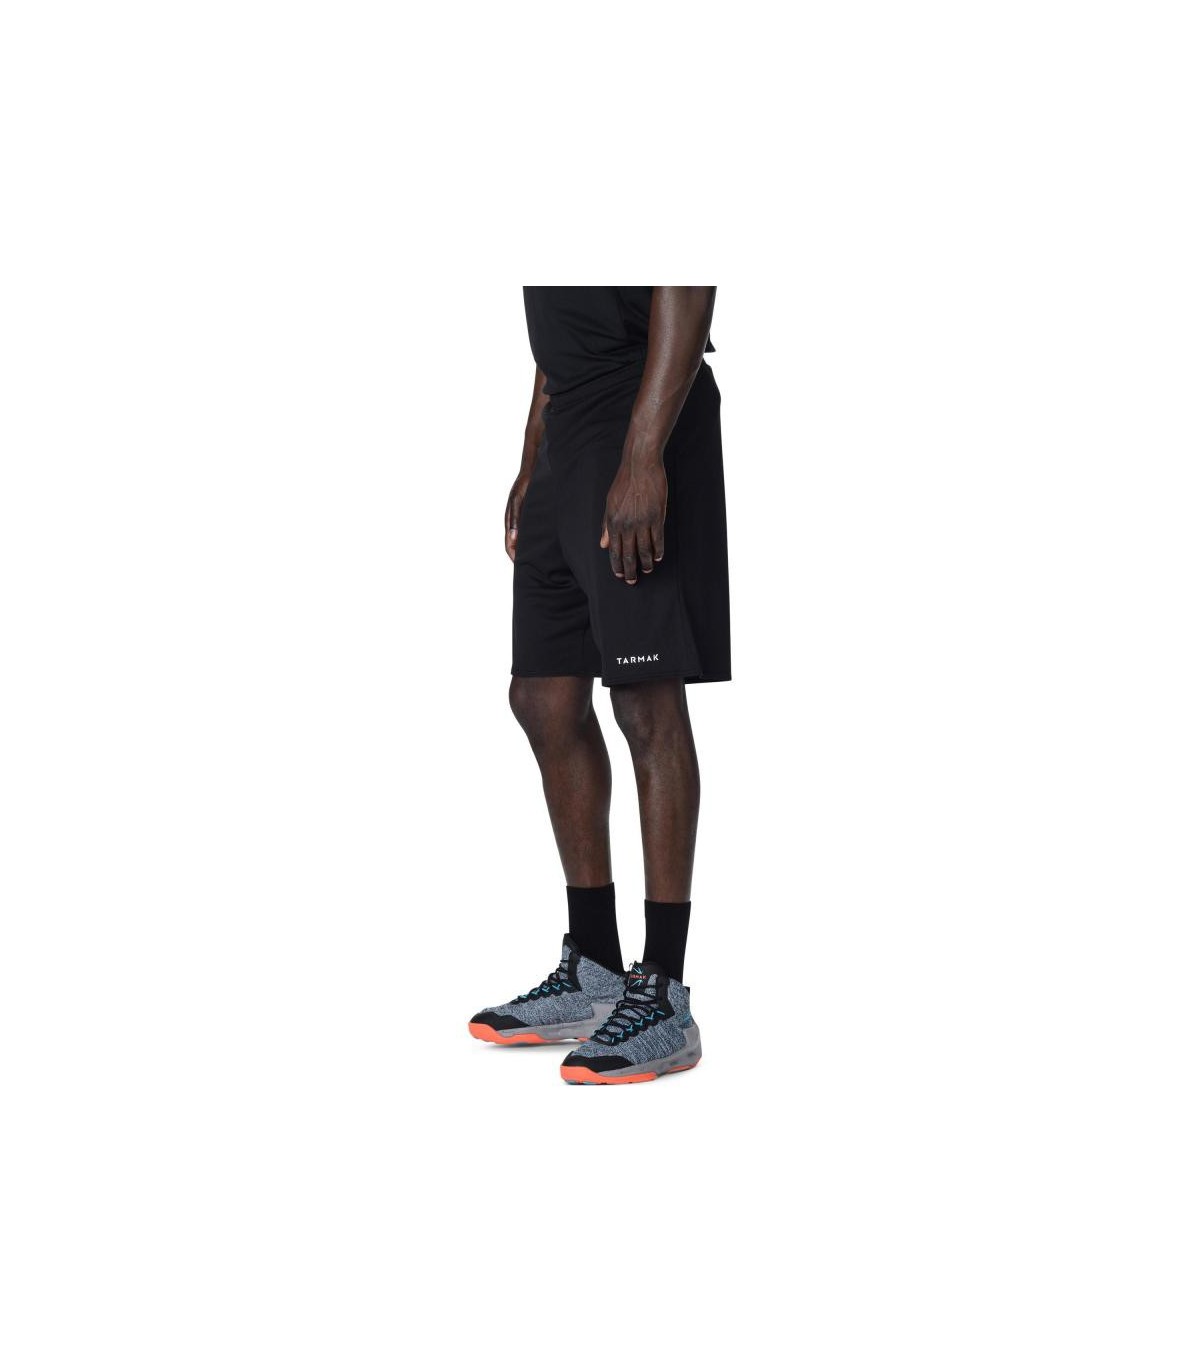 خرید آنلاین شلوارک های ورزشی مردانه برند دکتلون مخصوص بسکتبال